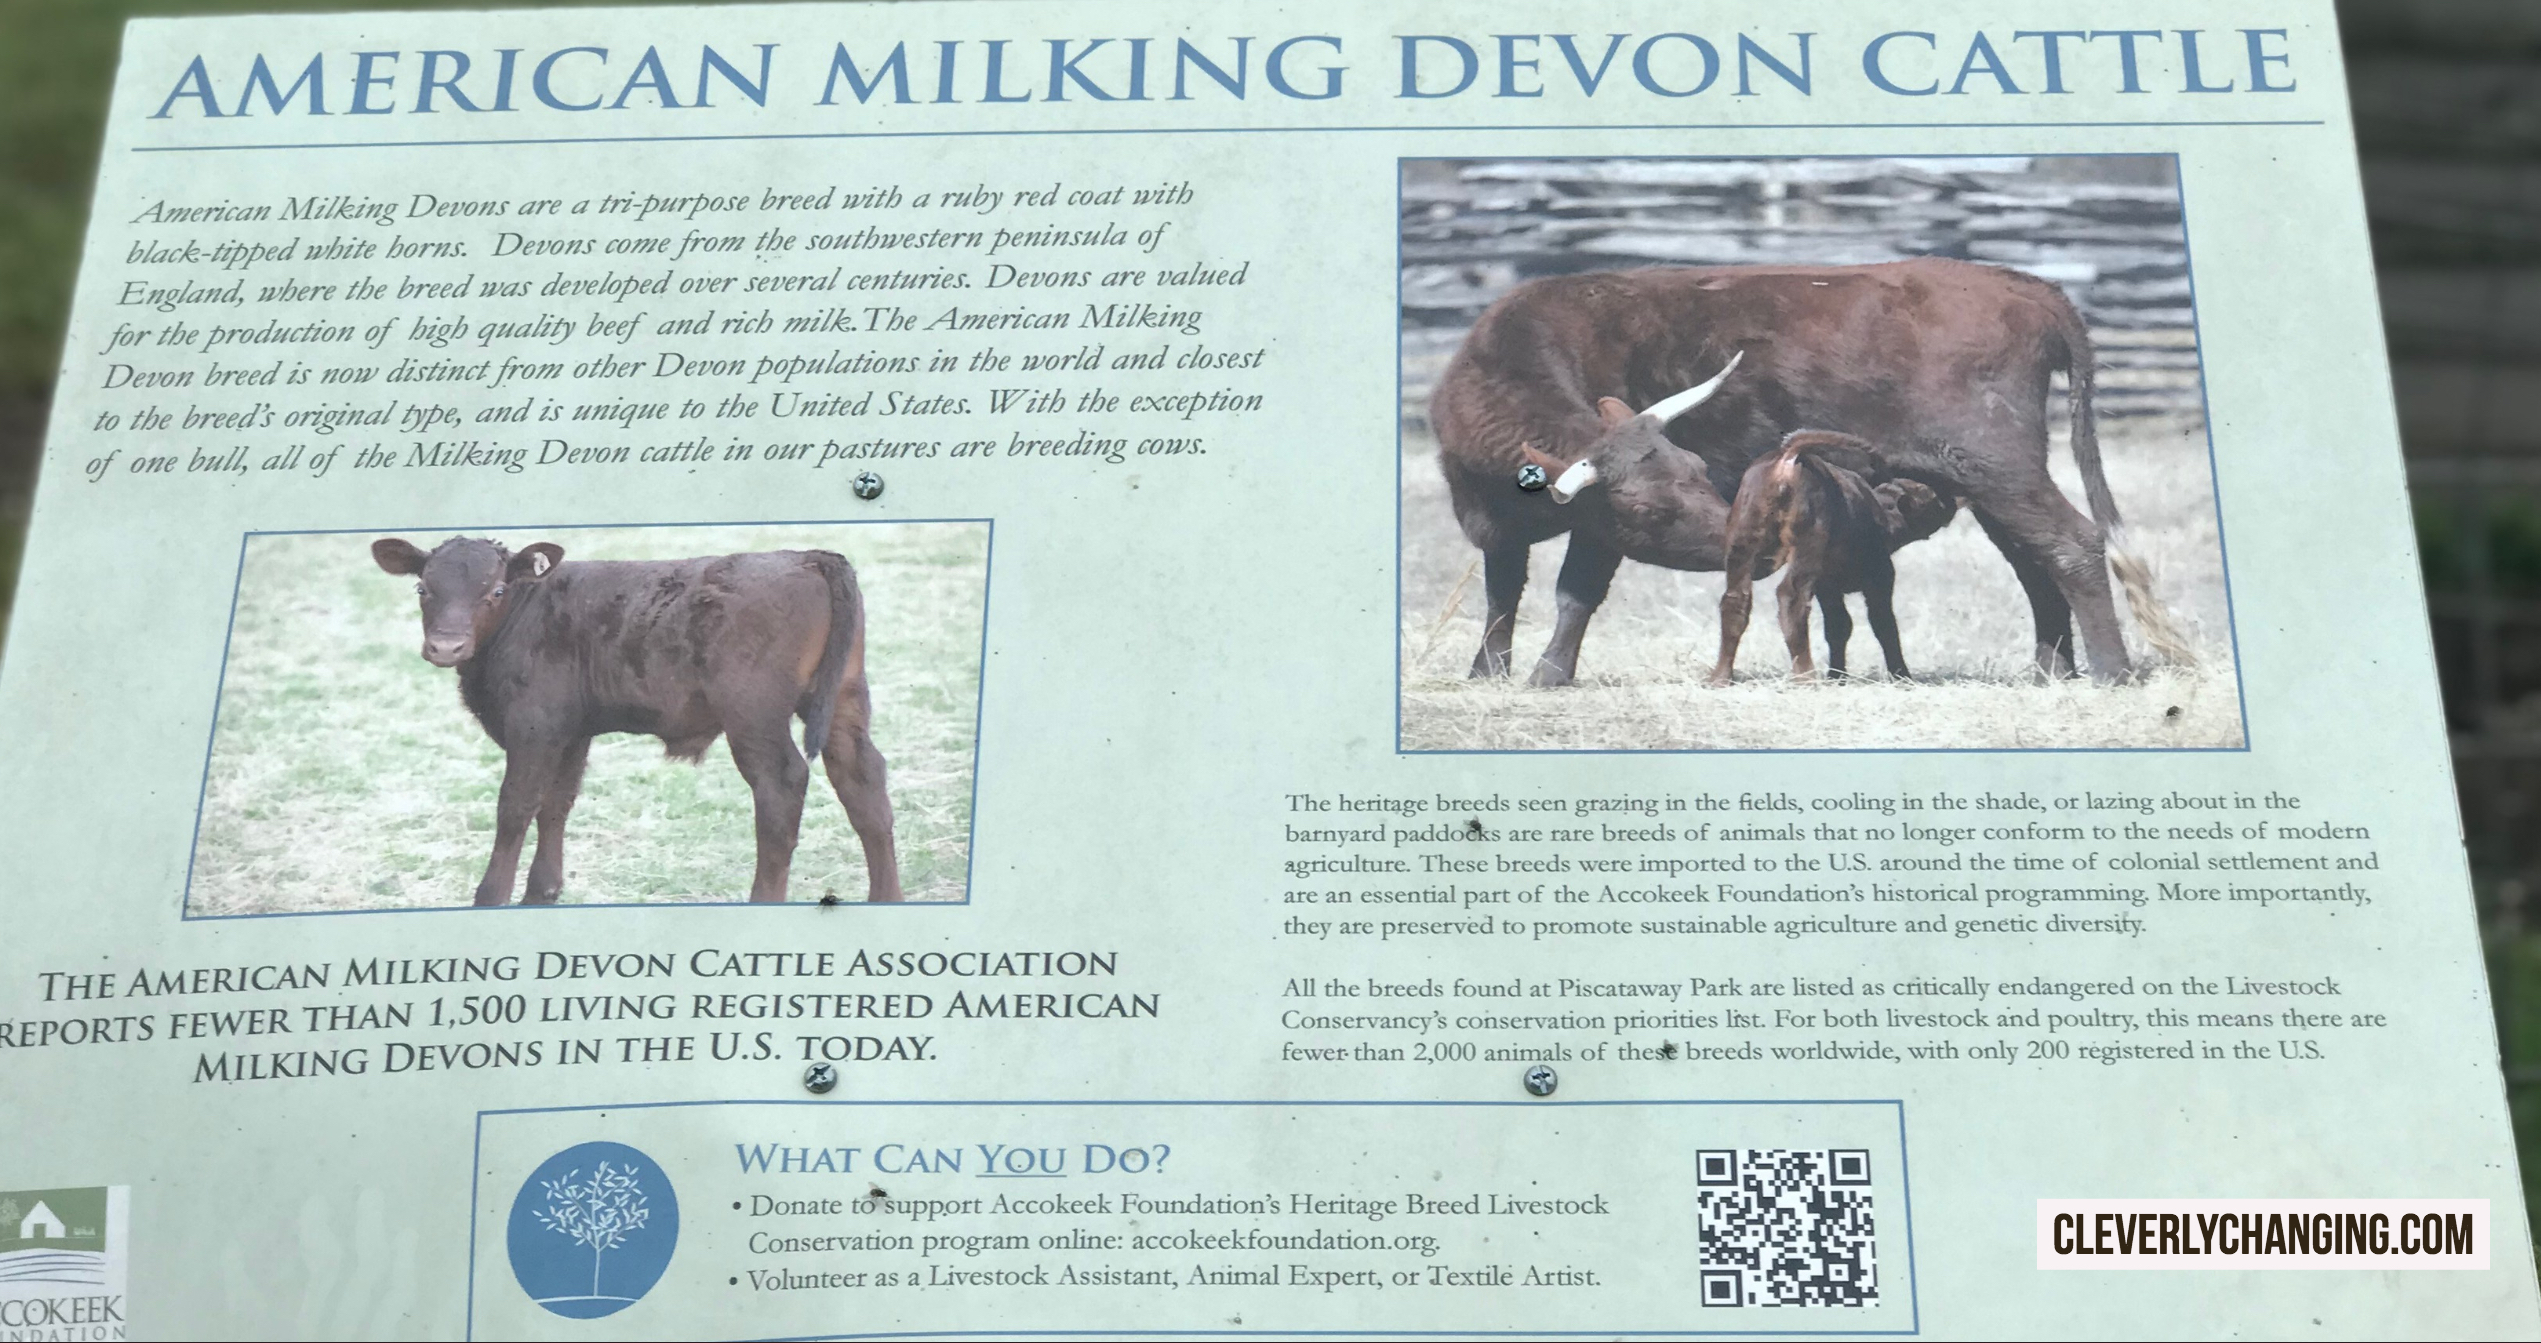 The American Milking Devon Cattle